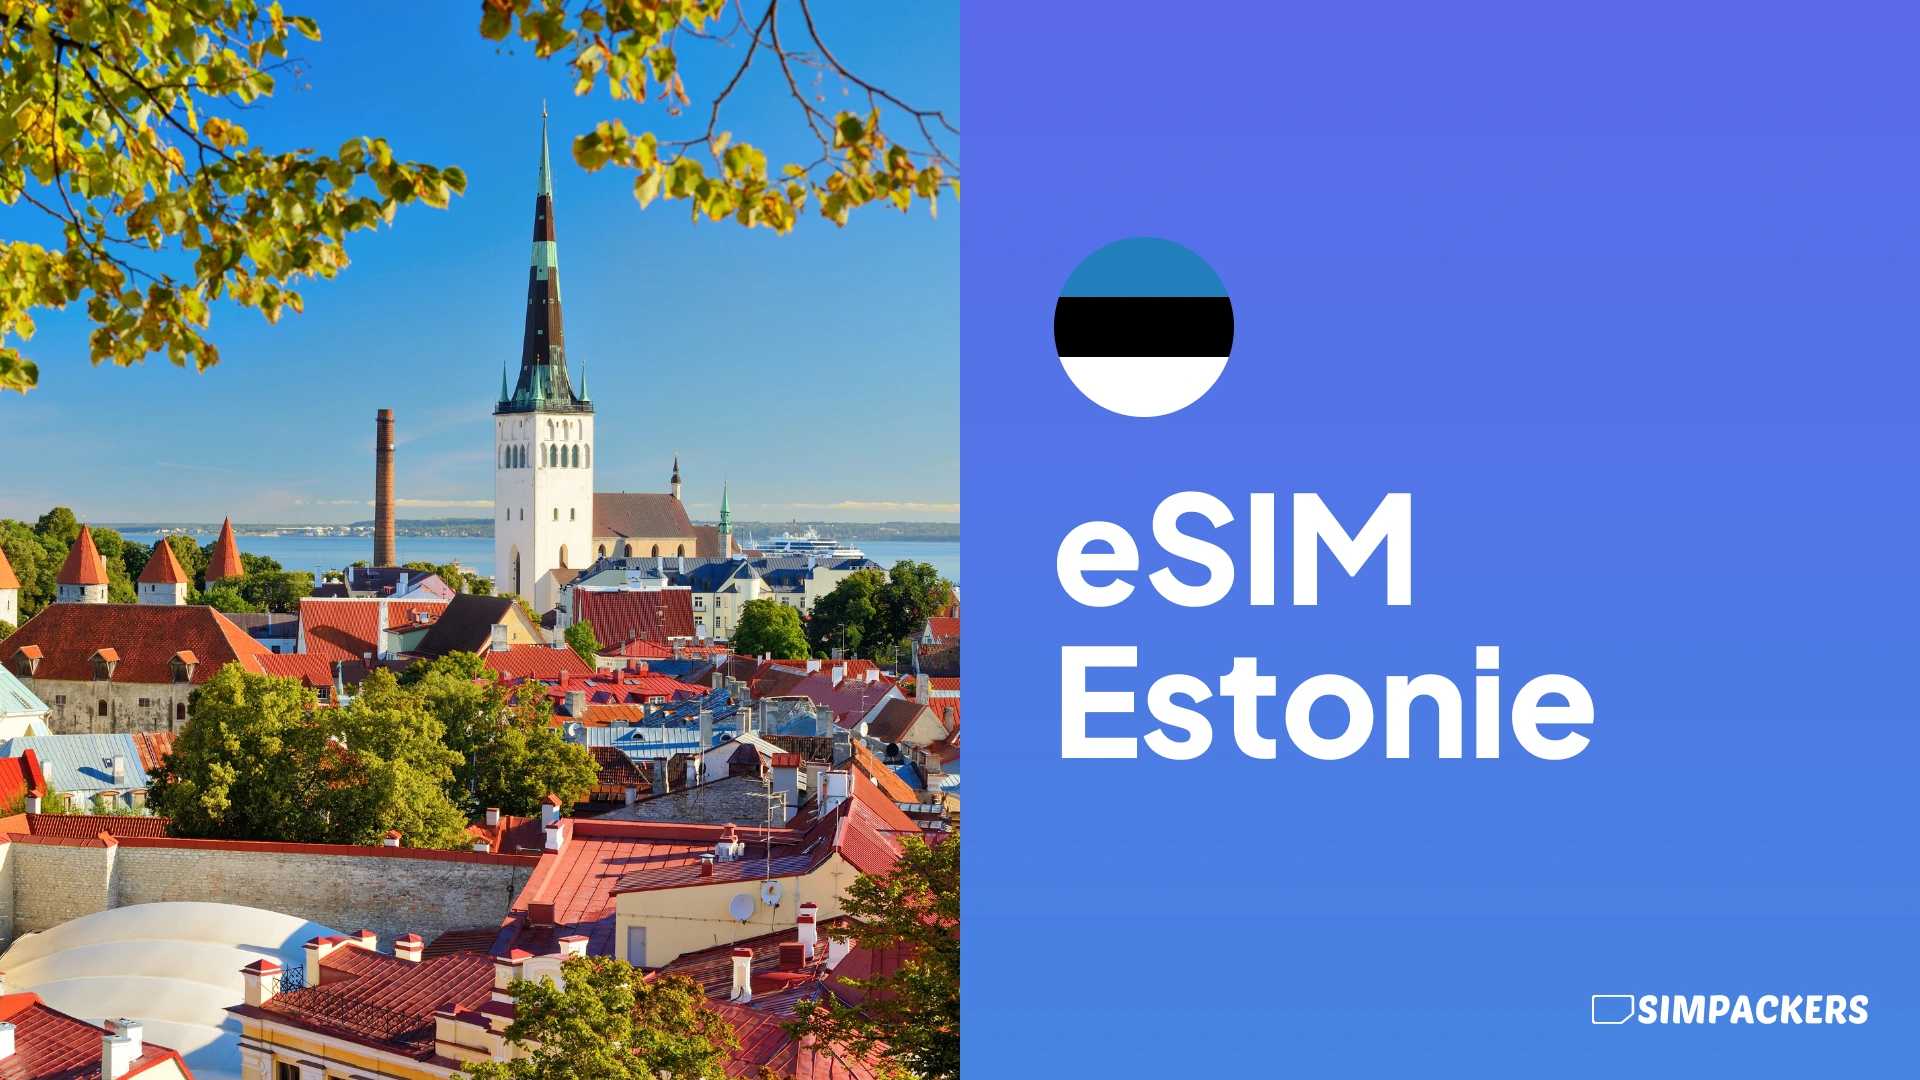 FR/FEATURED_IMAGES/esim-estonie.webp